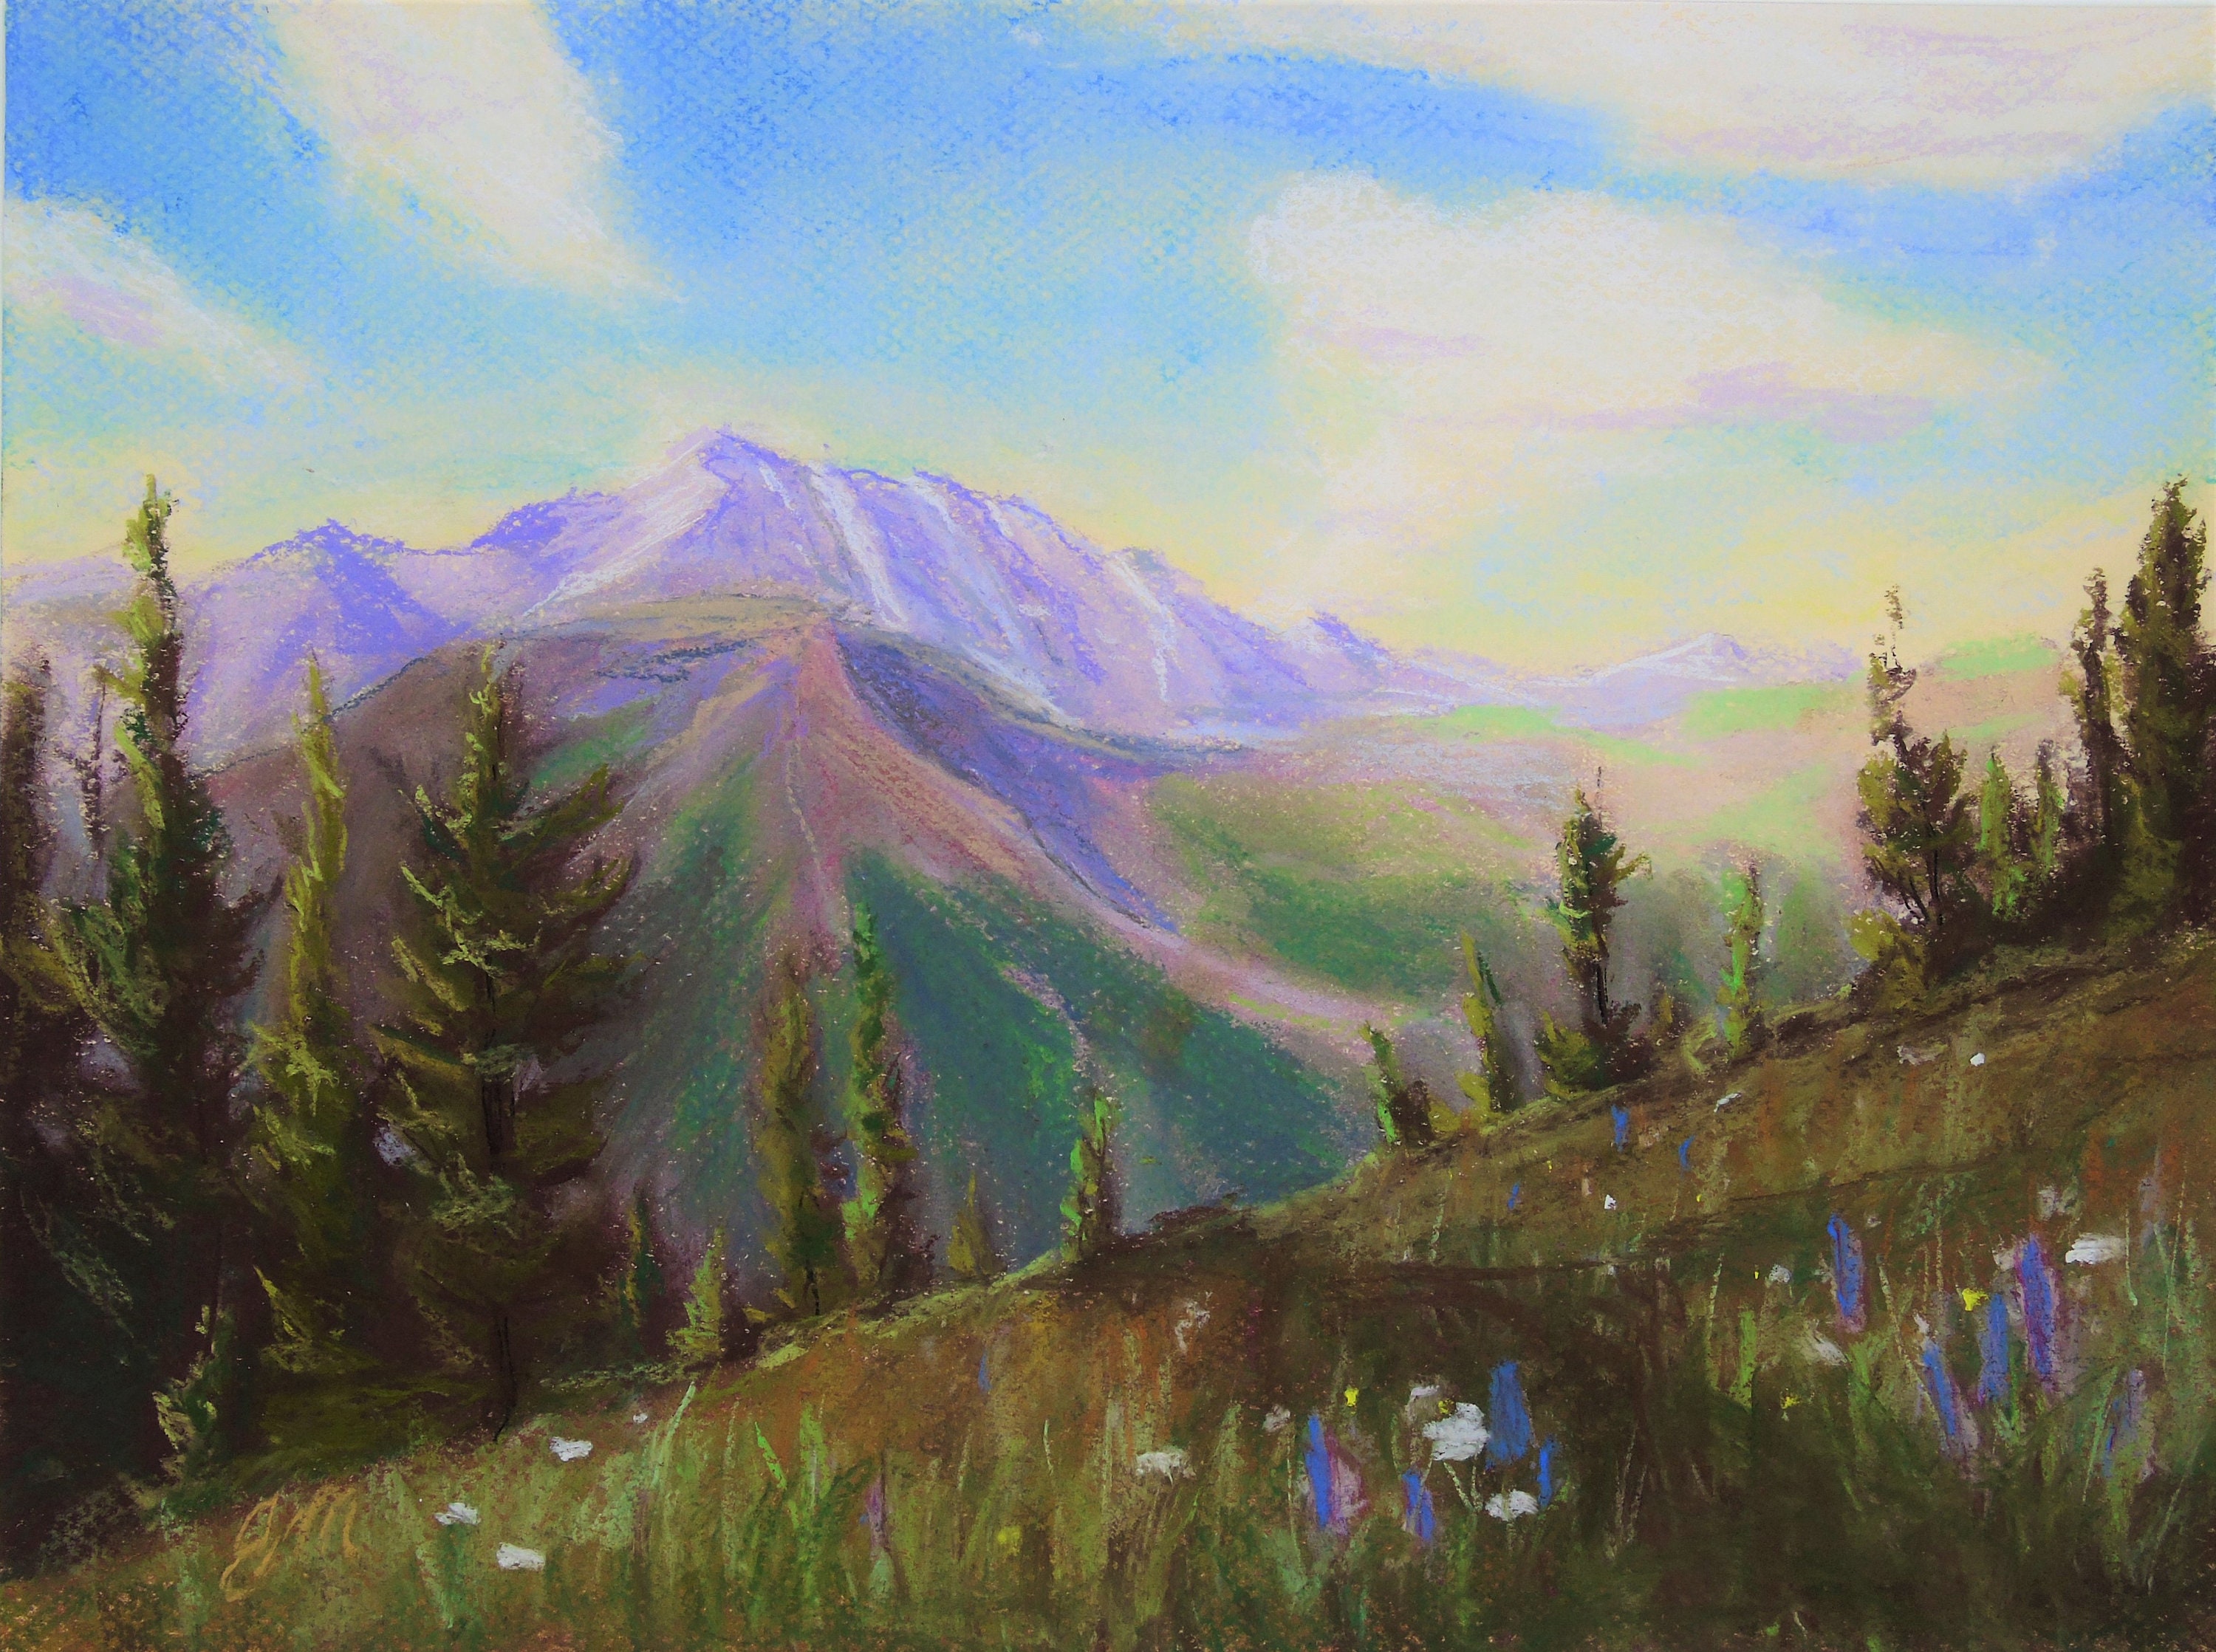 Oil pastel landscape by AngryDucky23 on DeviantArt